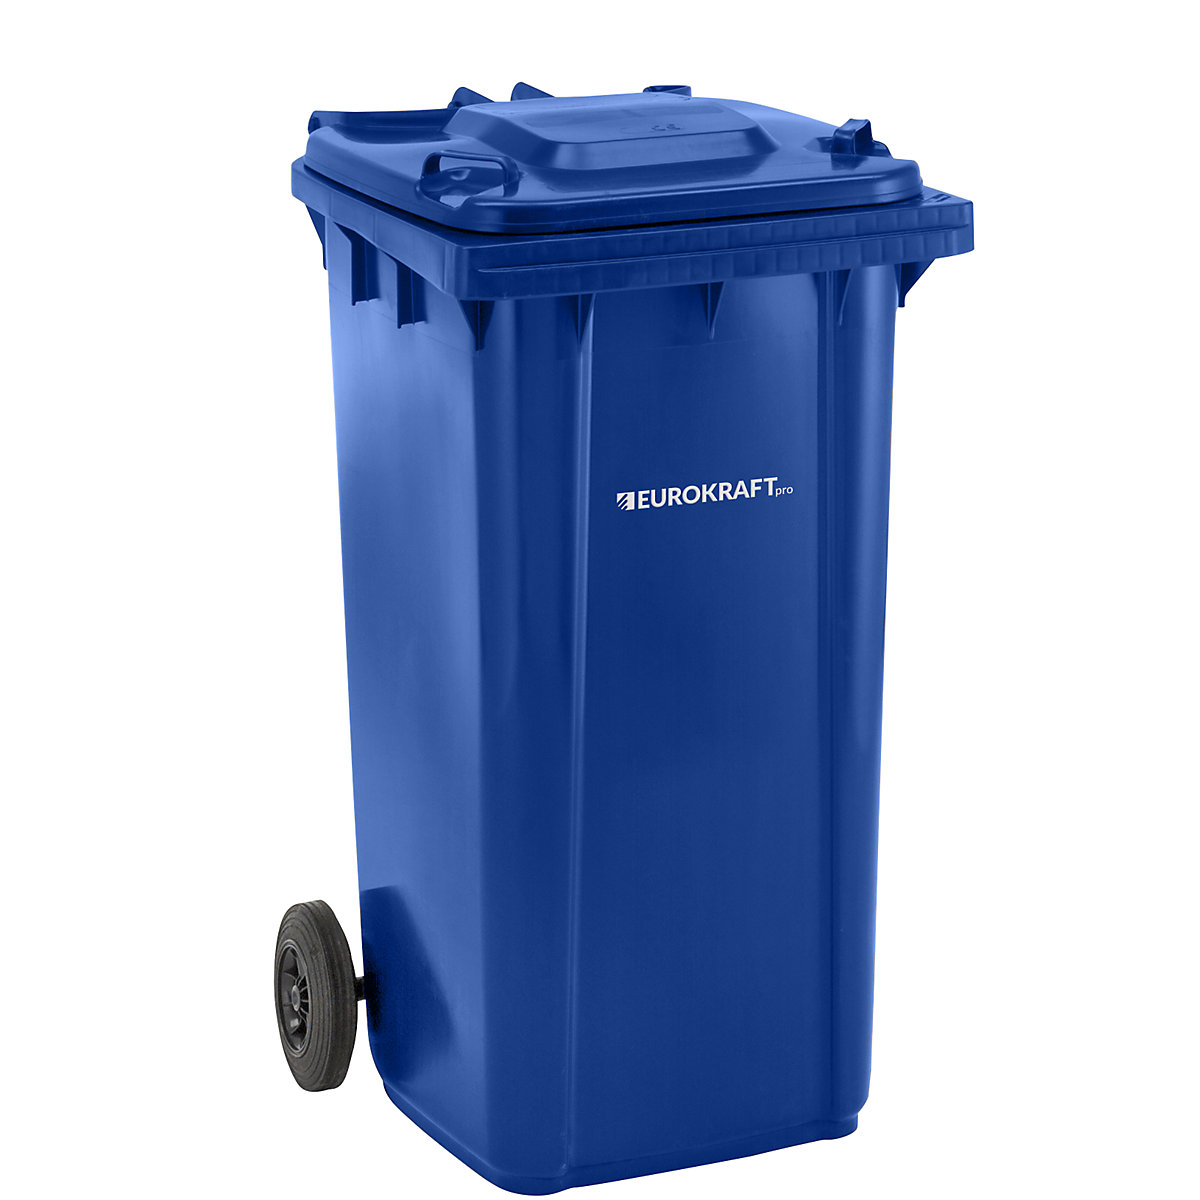 Pojemnik na odpady, z tworzywa, DIN EN 840 – eurokraft pro, poj. 240 l, szer. x wys. x głęb. 580 x 1100 x 740 mm, niebieskie